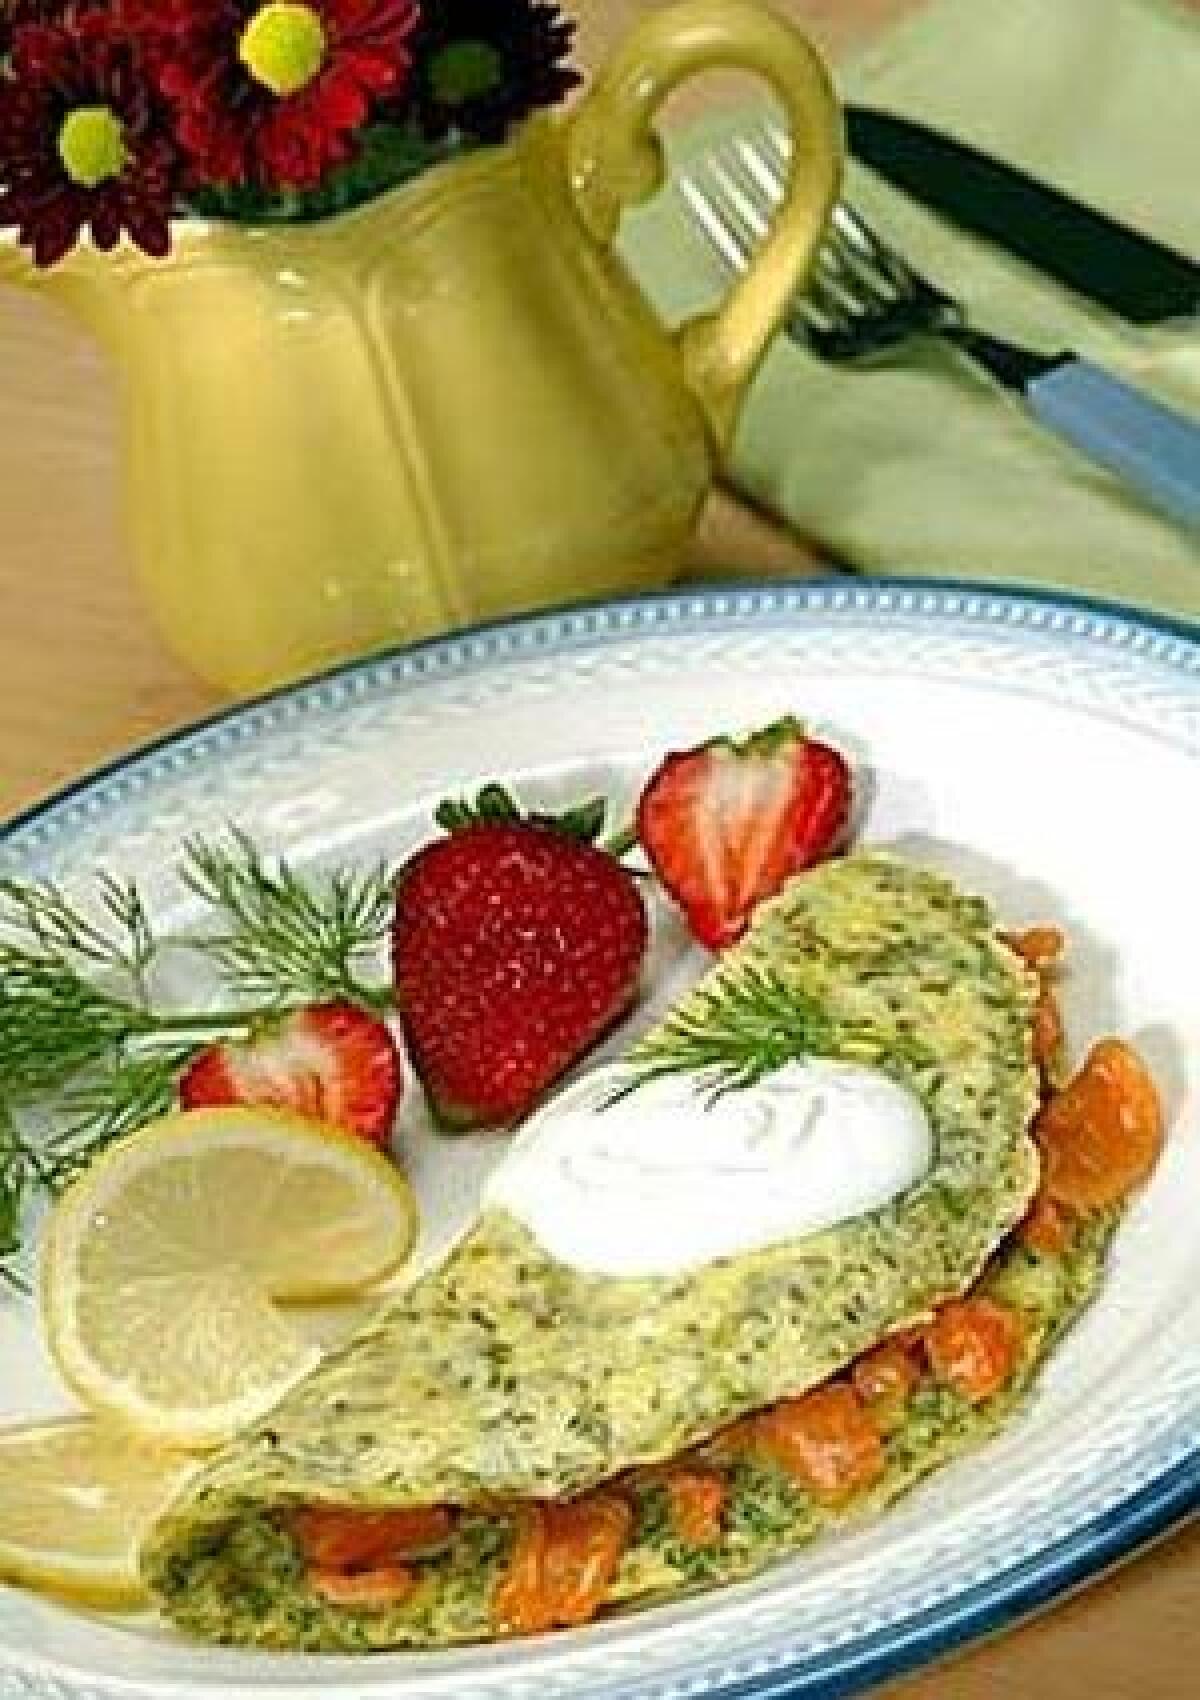 Chef John Gladishs lemon dill omelet reinterprets a smoked salmon scramble or frittata with a shift in the flavor emphasis of the ingredients. The lemony top note is offset by the smoky salmon and bright dill.